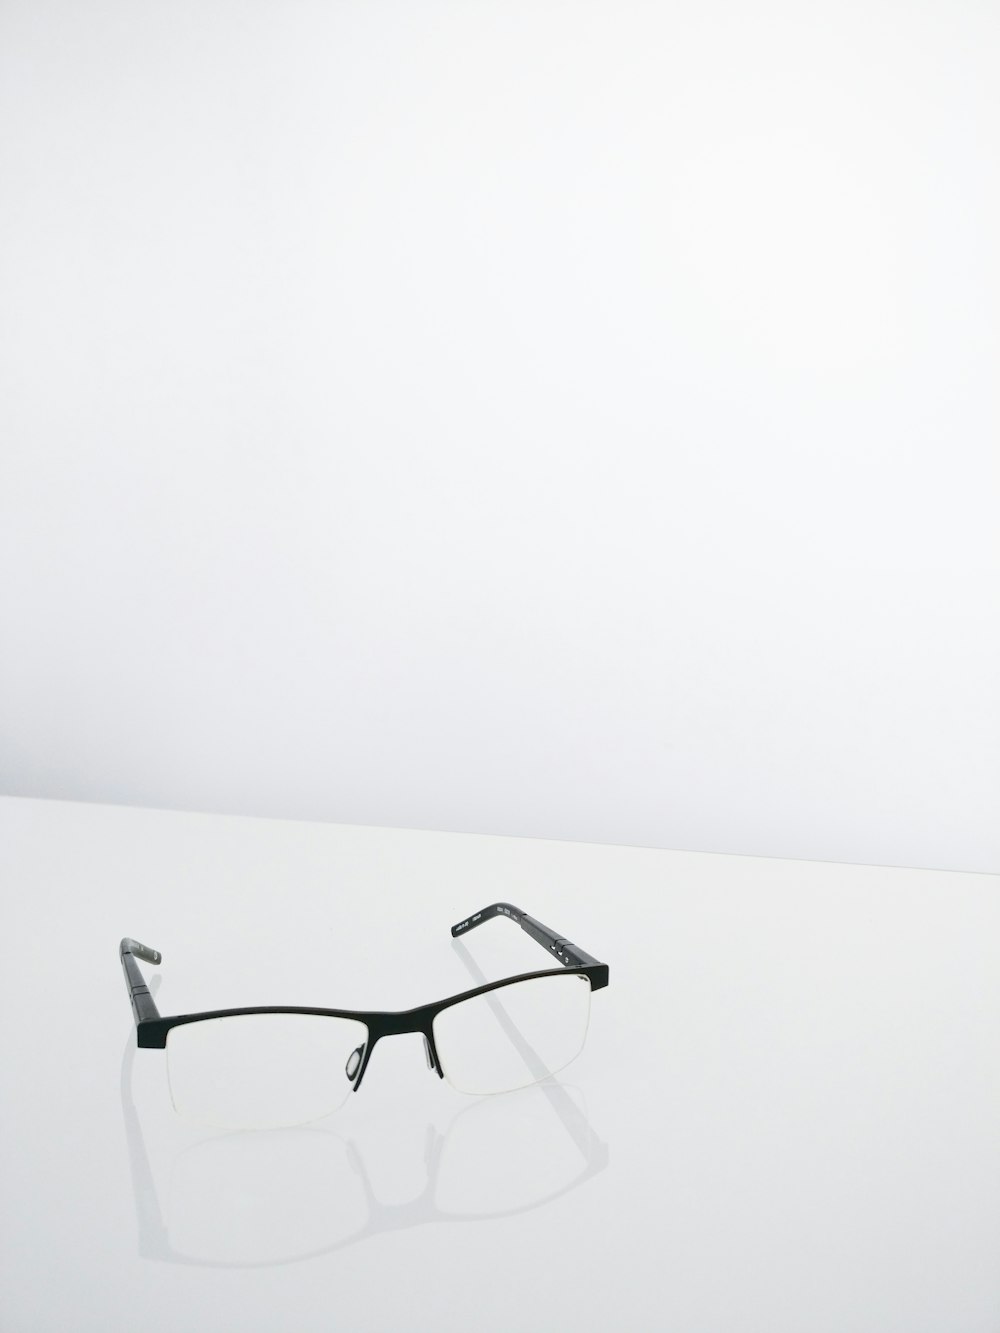 Foto par de anteojos negros con medio marco – gratis en Unsplash